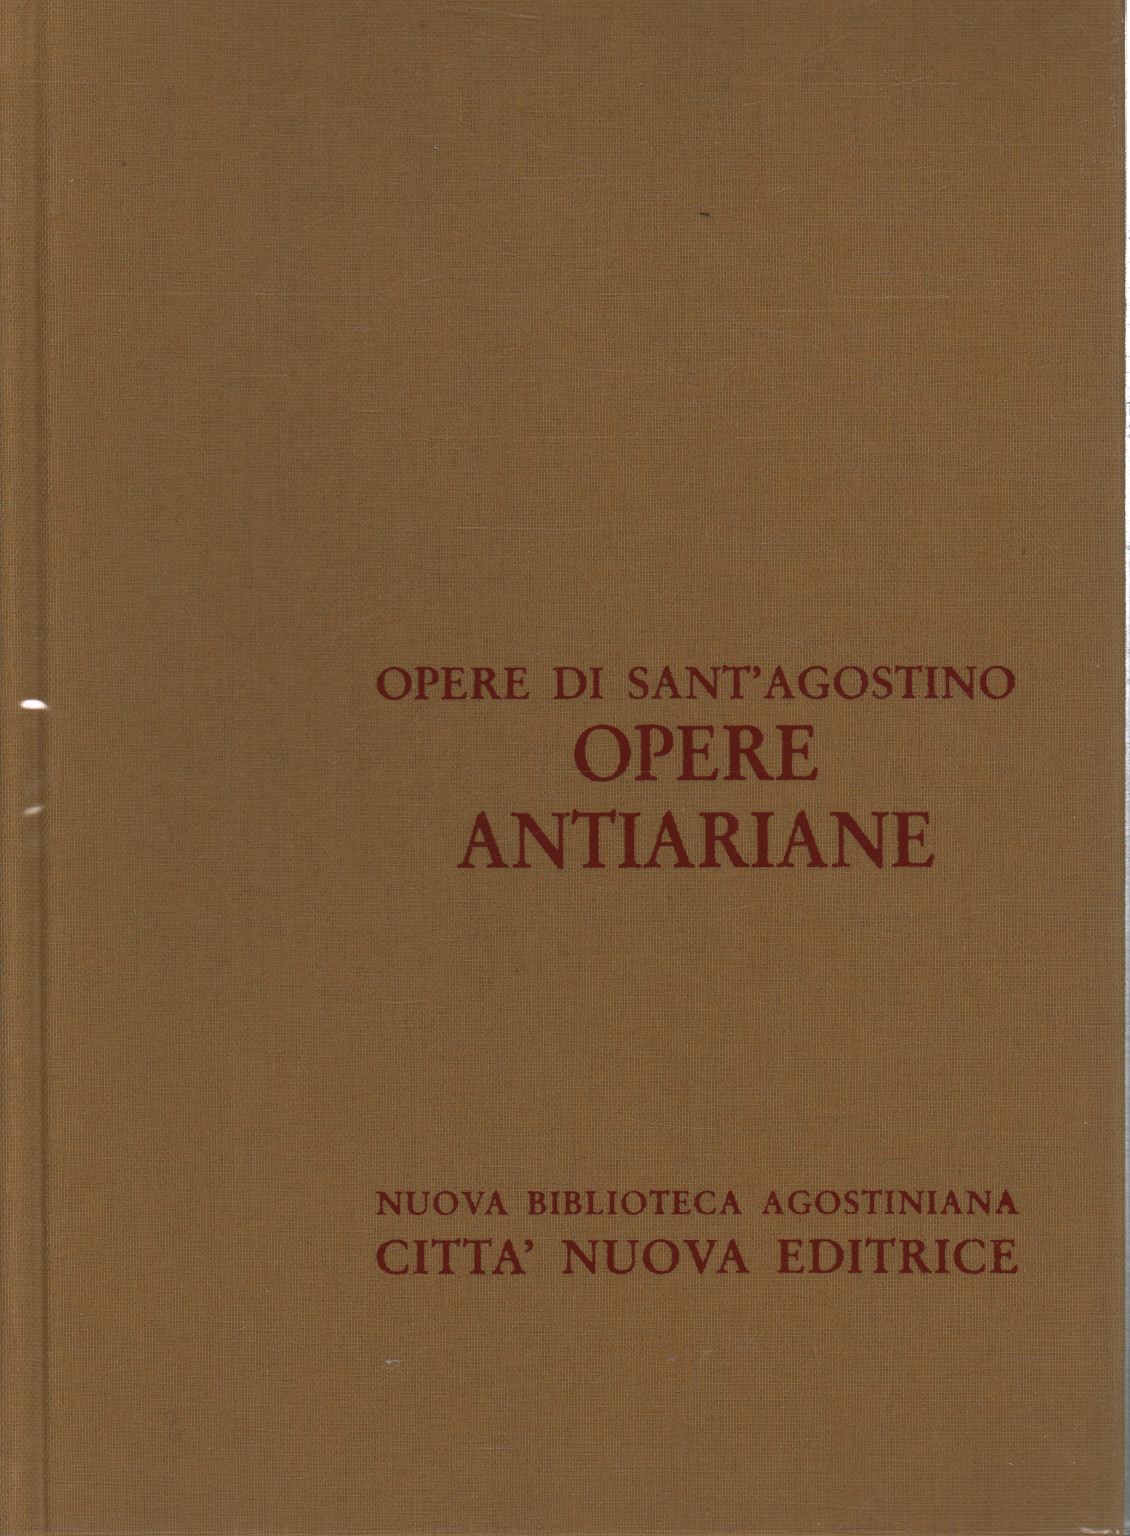 Œuvres antiariane (vol. XII/2),.un.